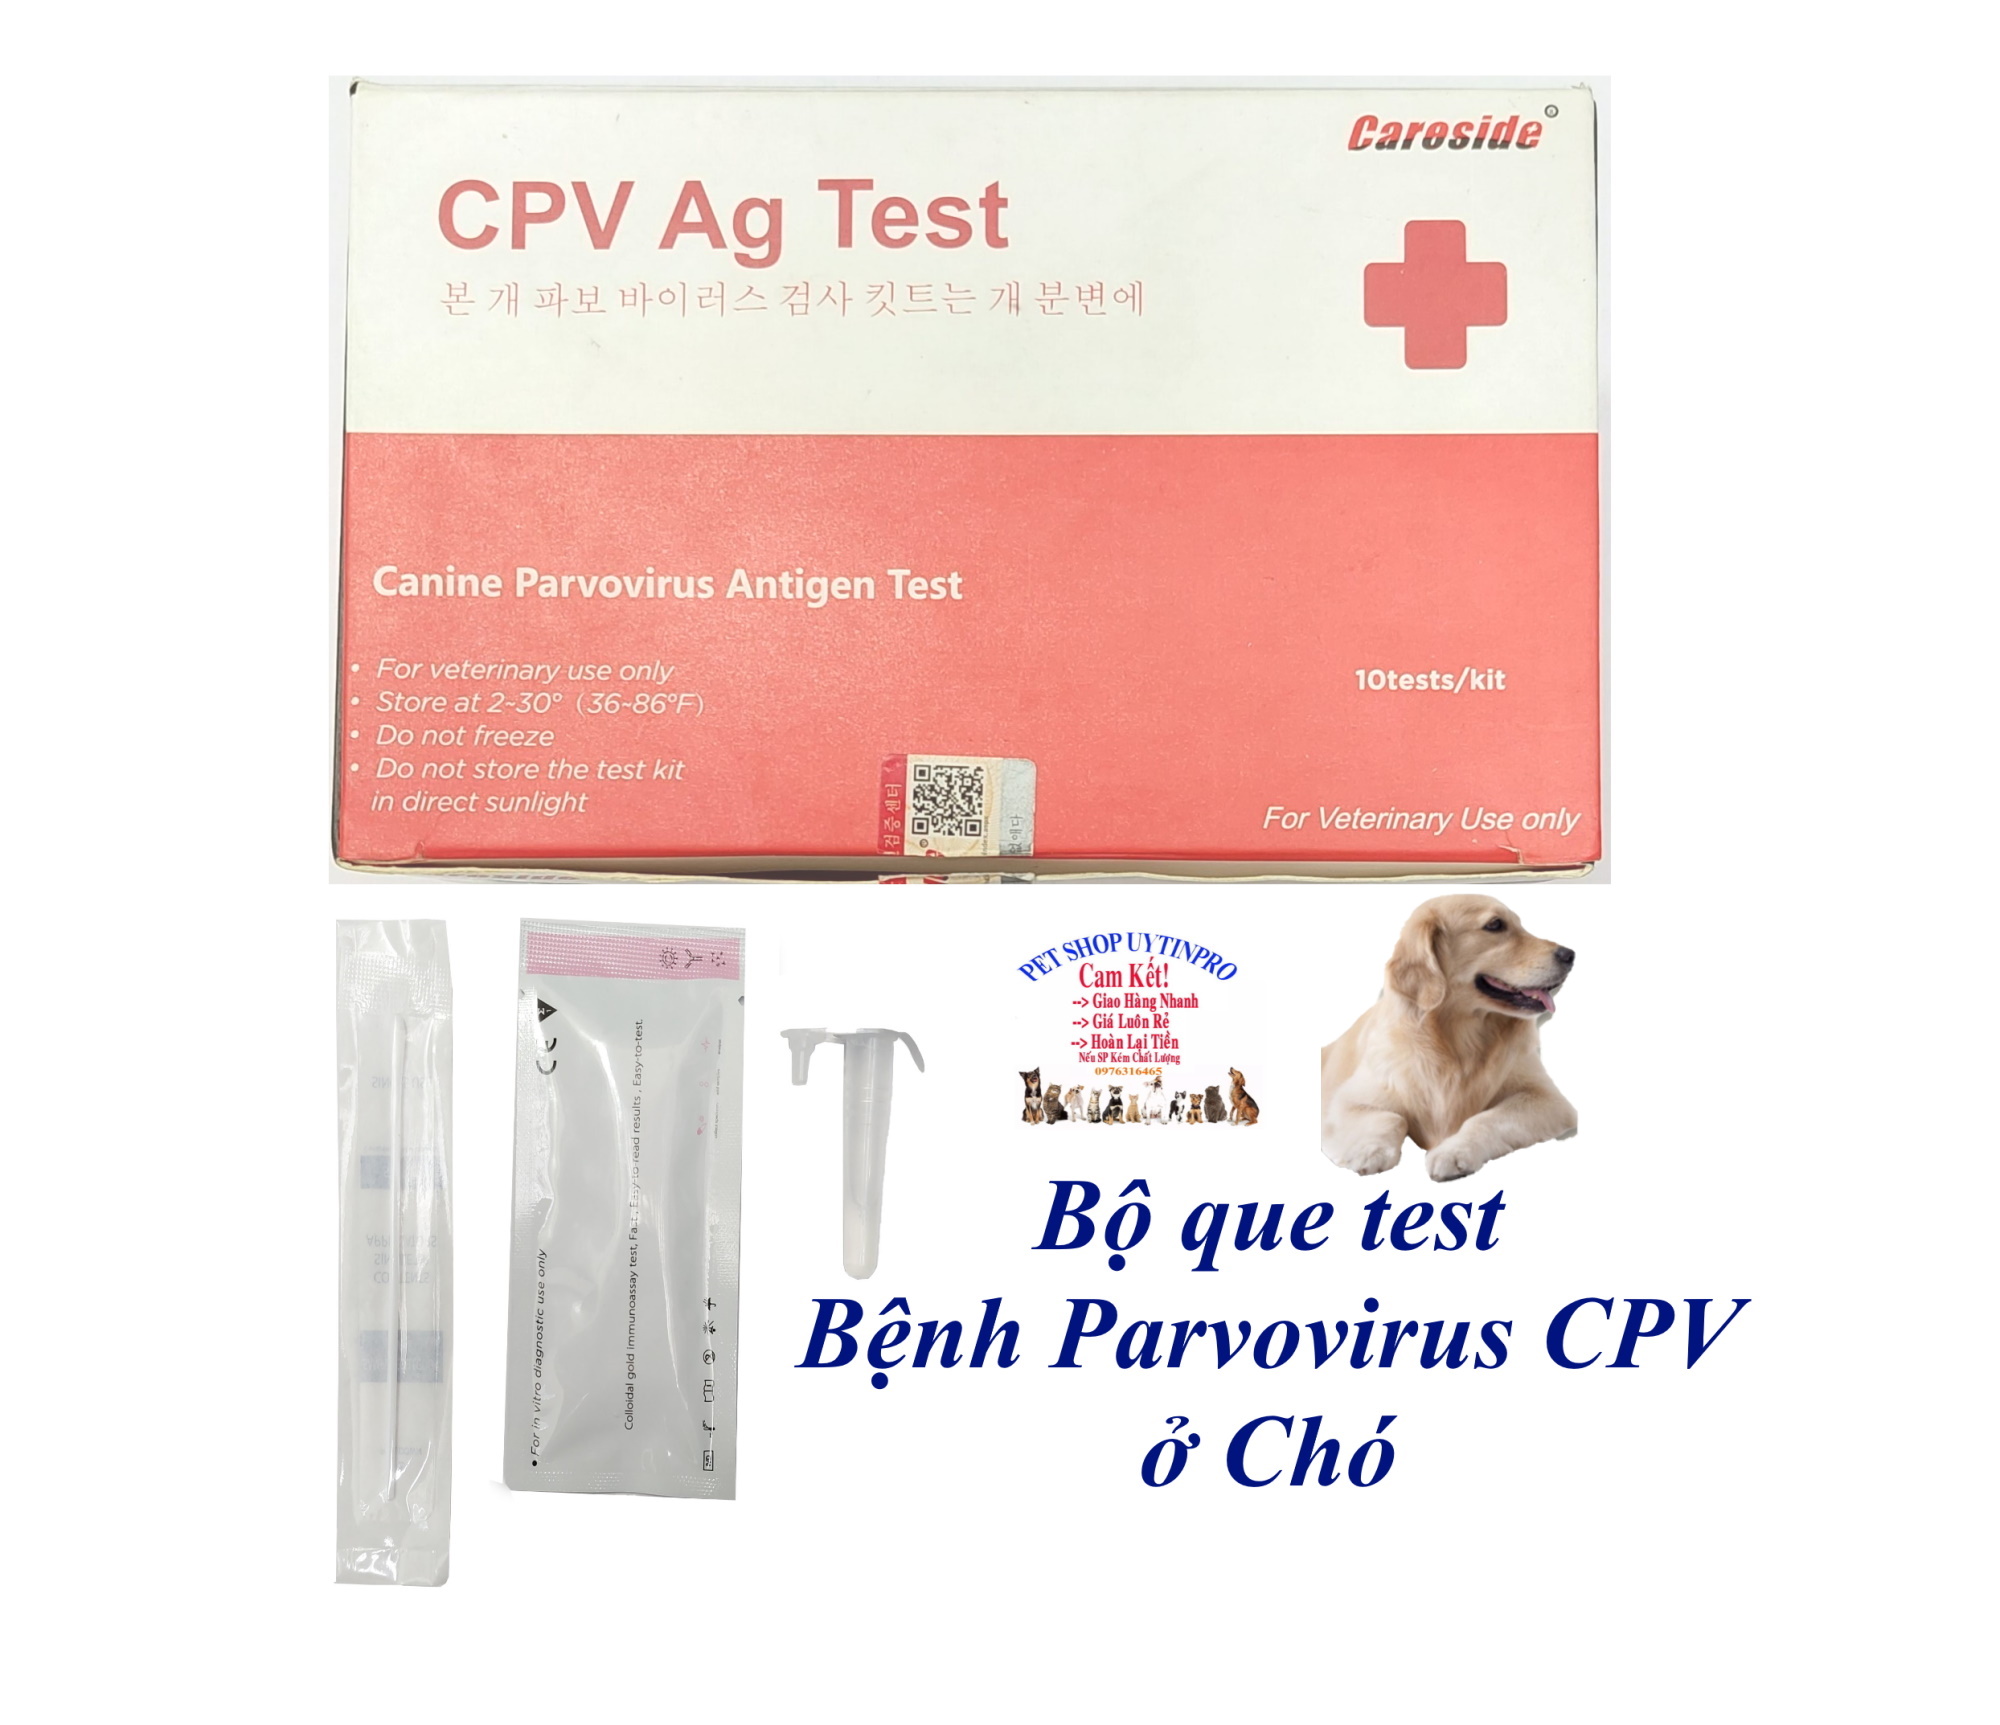 Bộ que test bệnh Pavor CPV ở Chó - CPV Ag Test Canine Parvovirus Antigen Test Careside Giúp phát hiện bệnh sớm